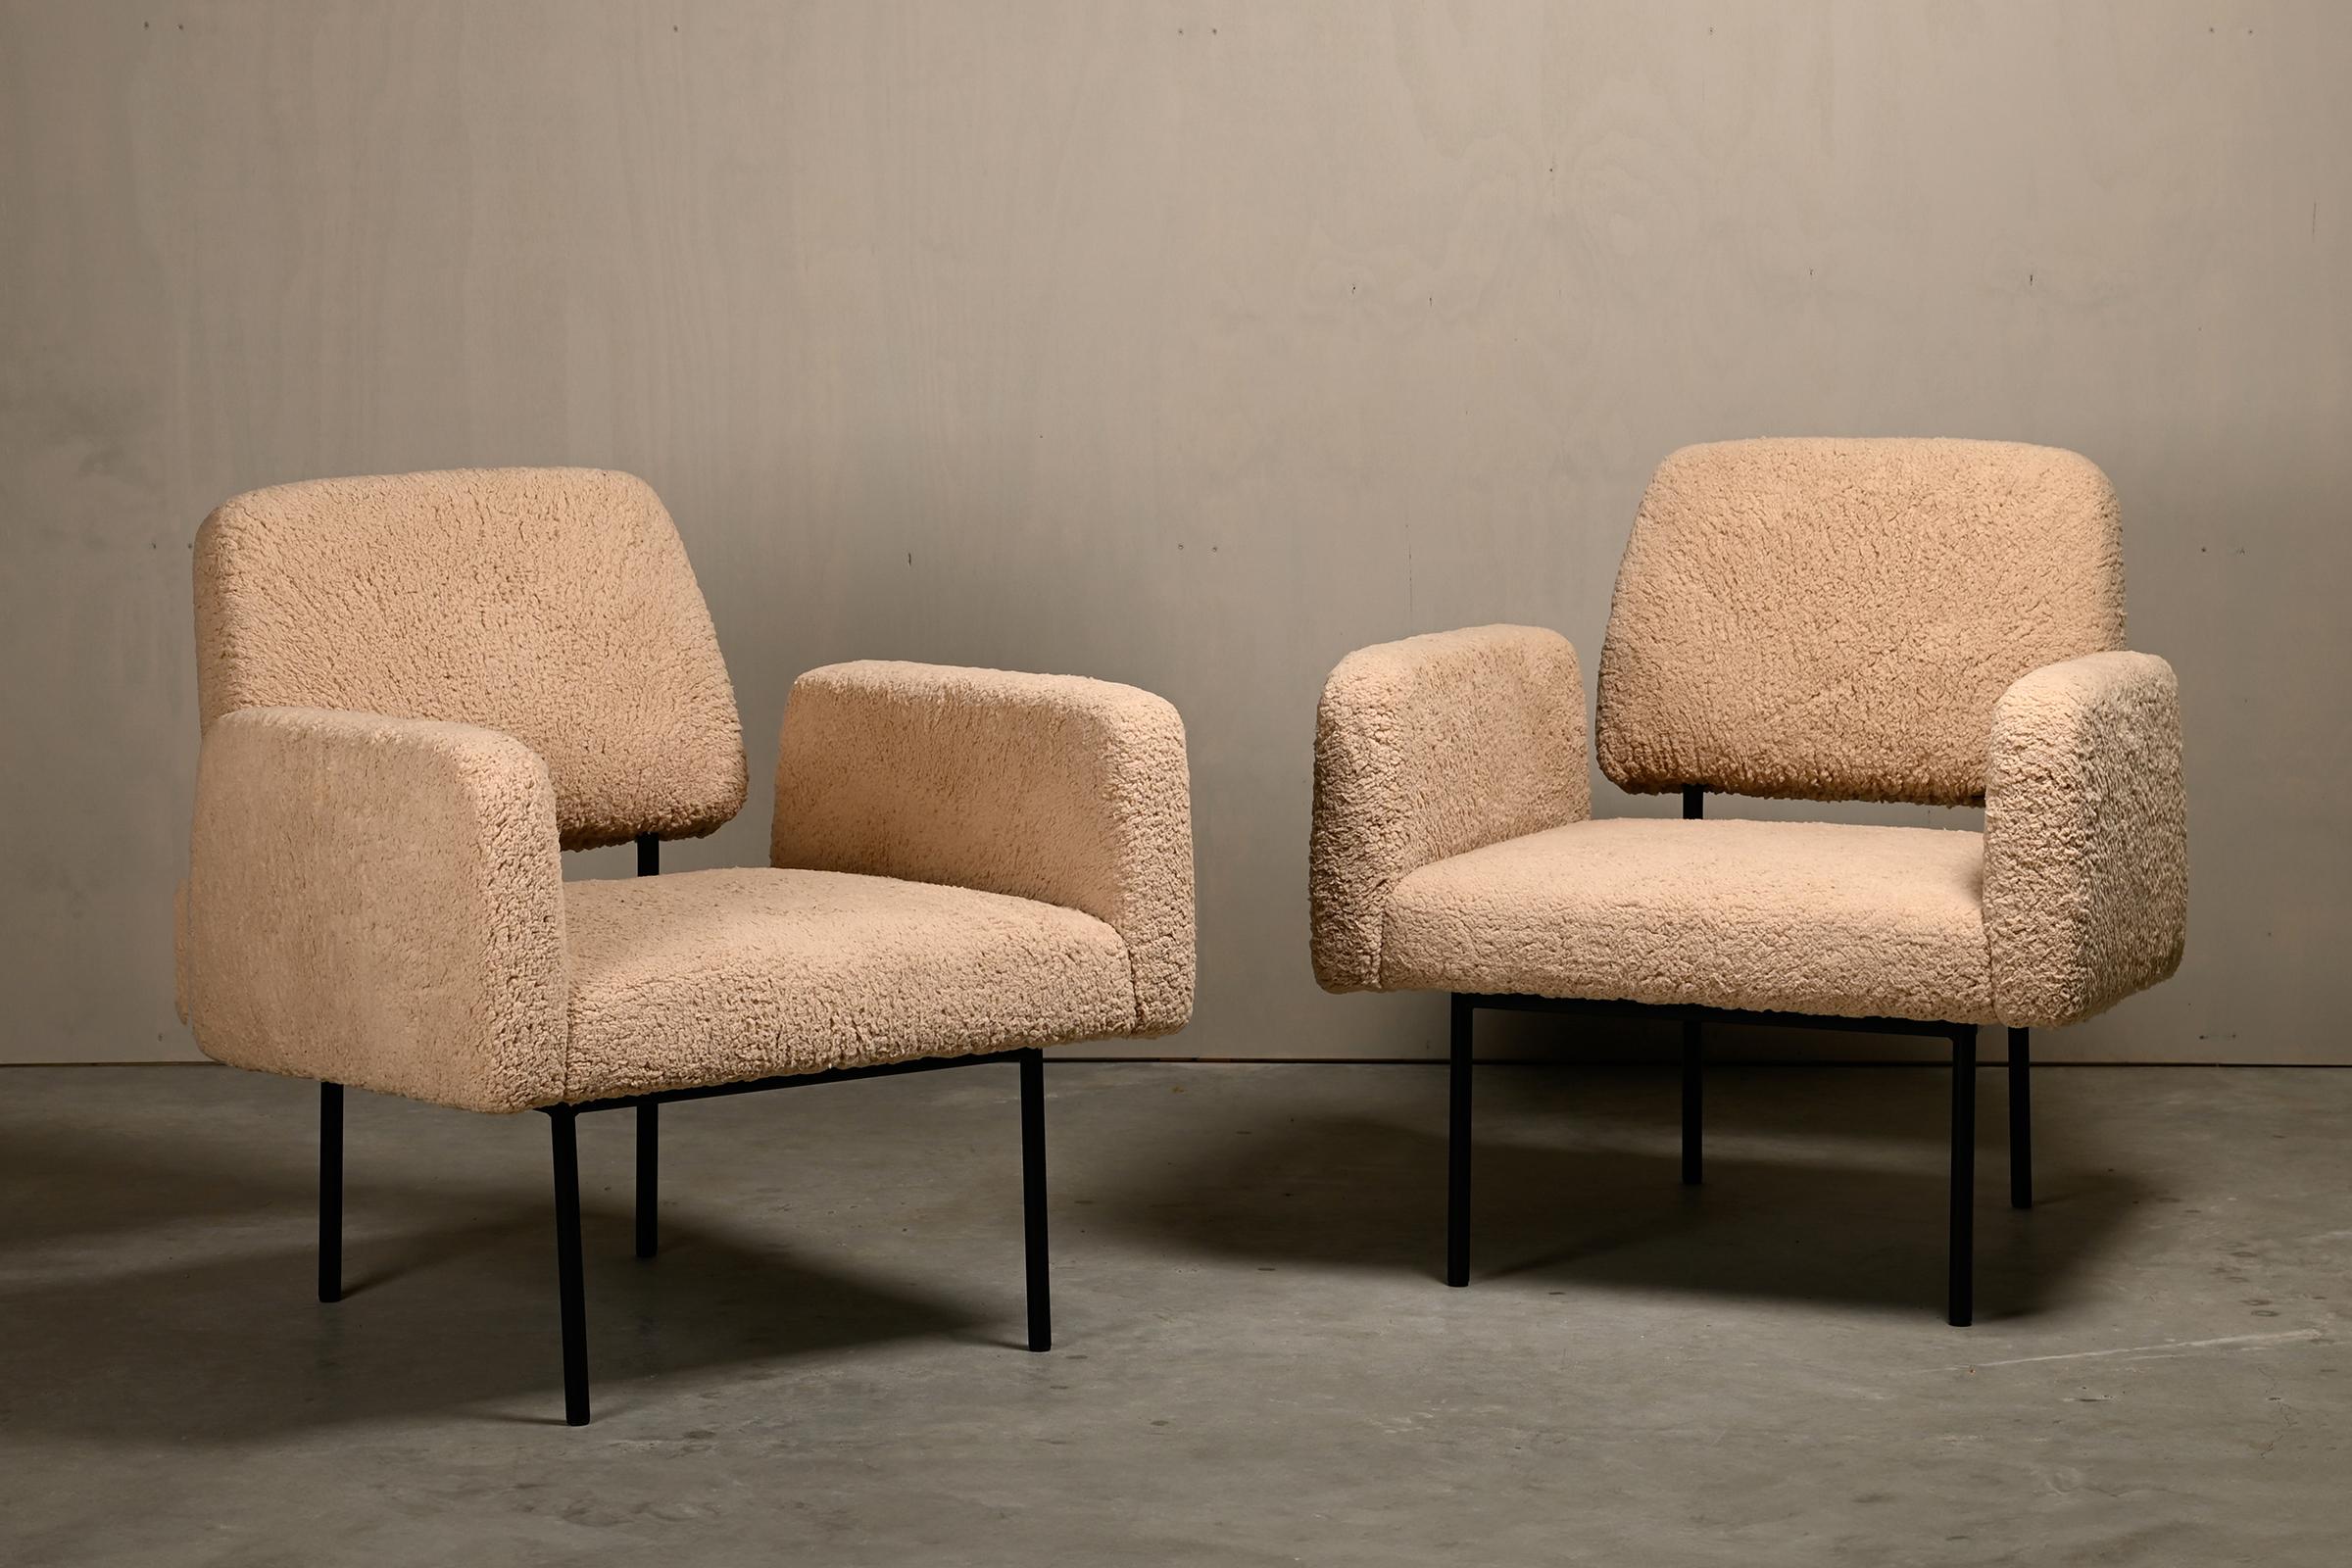 Moderner Sessel (Modell 42), entworfen von Nathan Lindberg in Anlehnung an das Edward Wormley New York Sofa und verschiedene Entwürfe von Florence Knoll. Ein zeitgenössischer Stuhl, der im Geiste des Mid-Century Modern entworfen und in kleinen